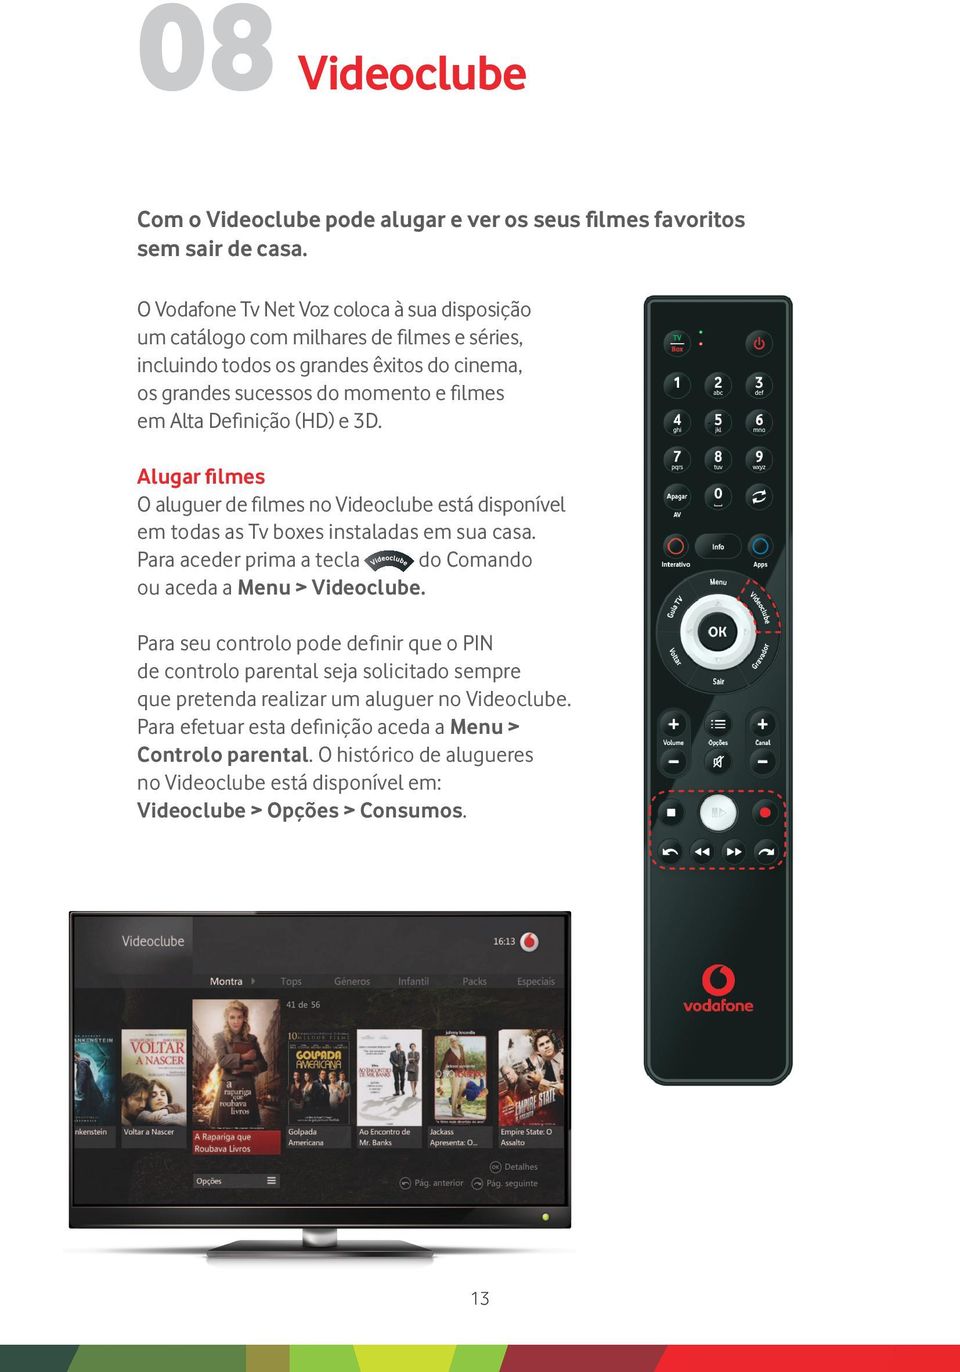 Definição (HD) e 3D. Alugar filmes O aluguer de filmes no Videoclube está disponível em todas as Tv boxes instaladas em sua casa.